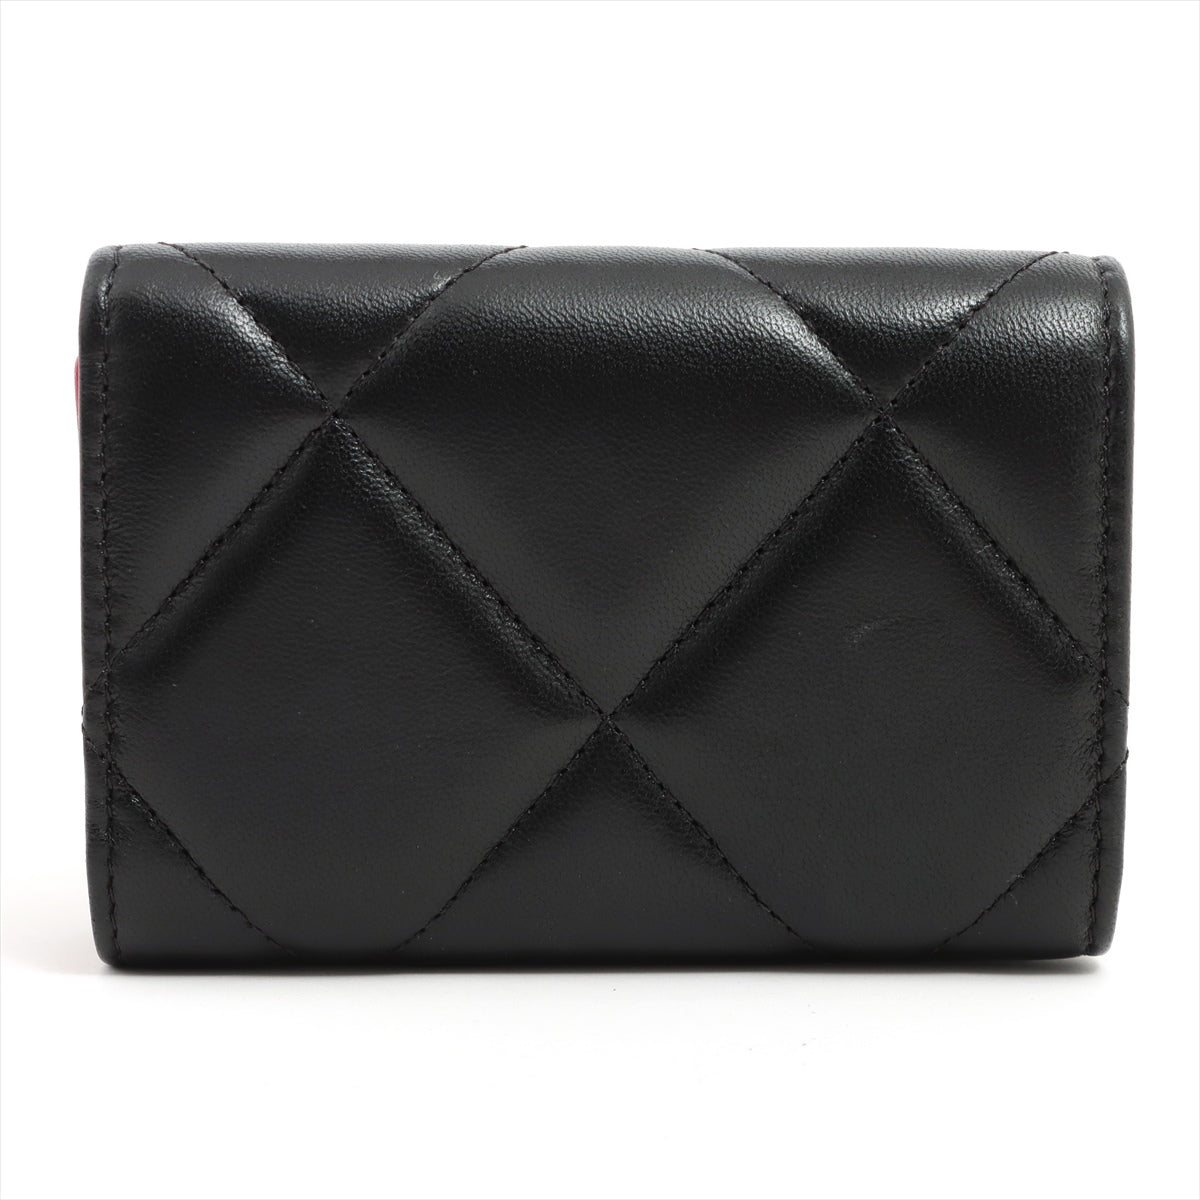 Chanel CHANEL 19 Lambskin Wallet Black Gold Metal fittings 31st